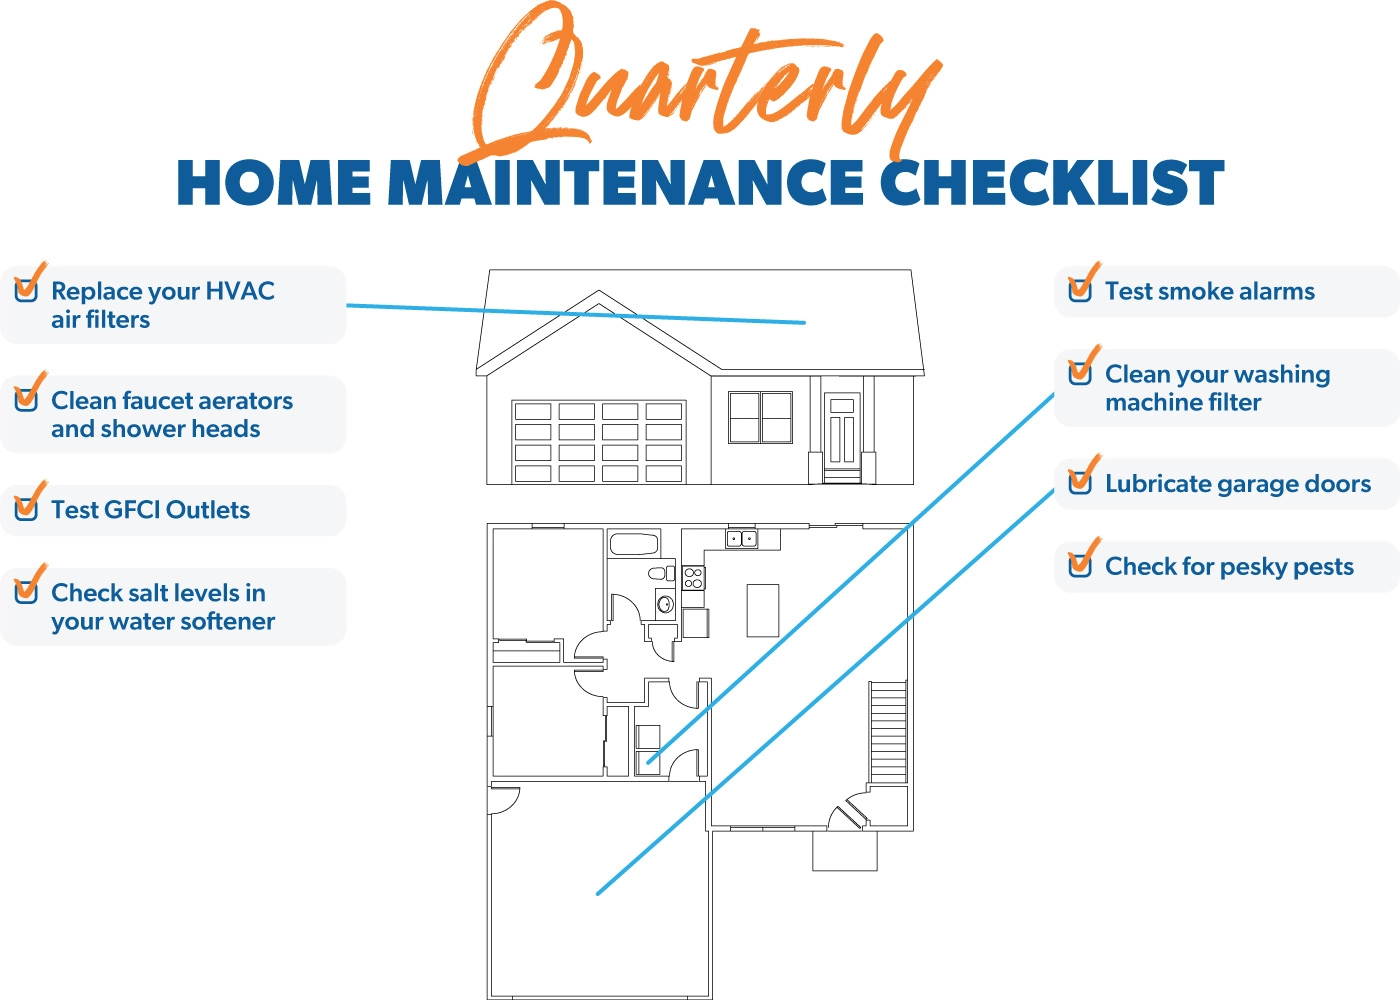 Quarterly Home Maintenance Checklist